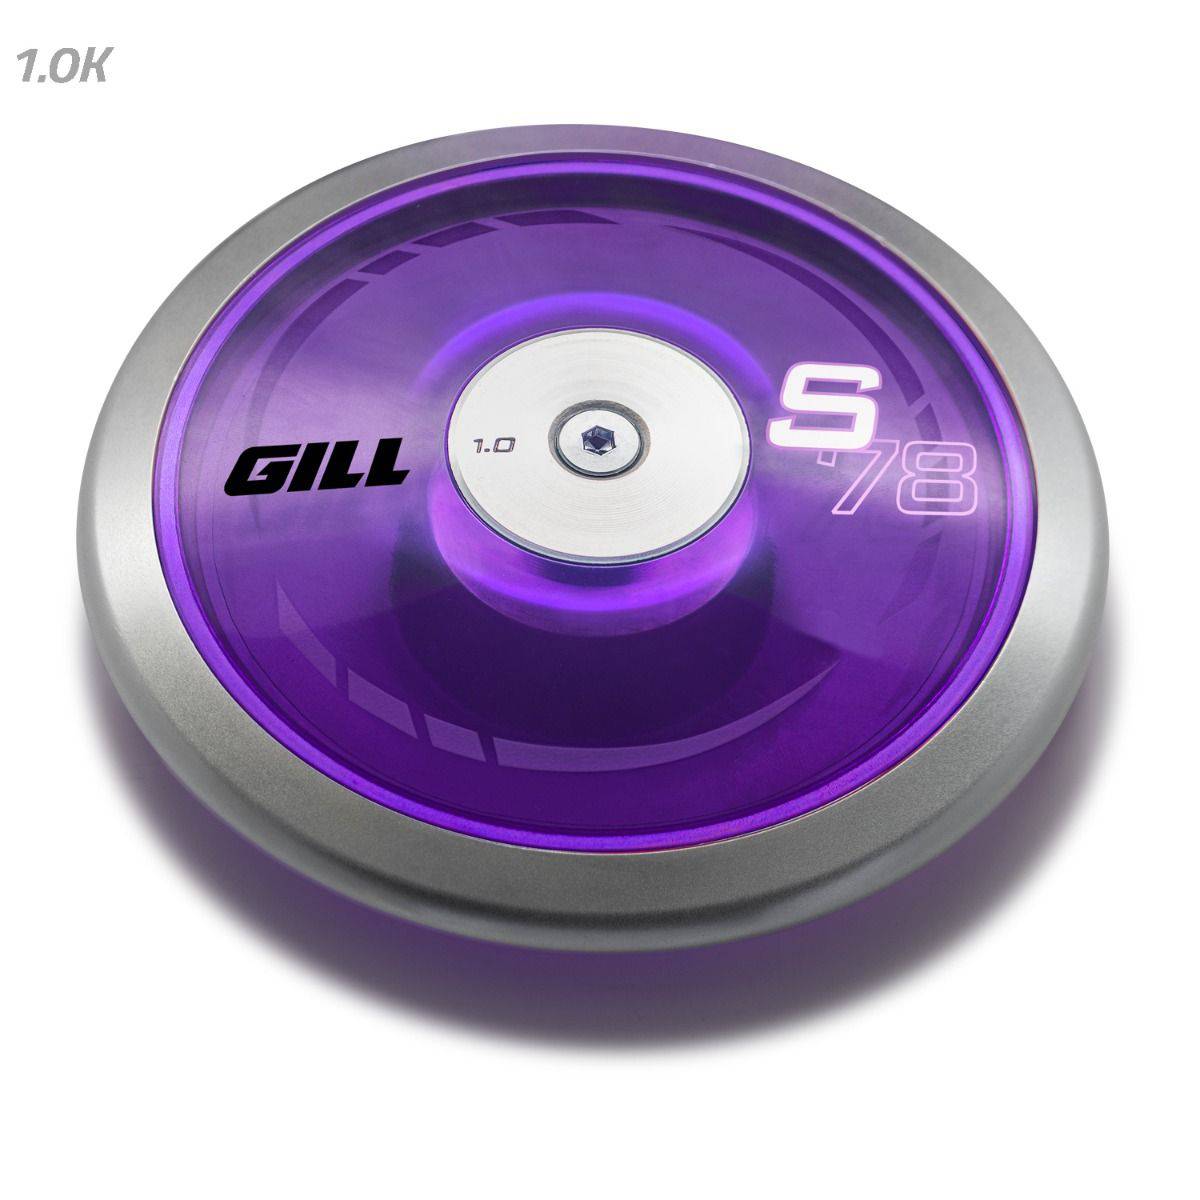 Gill Athletics 1.0K S78 Purple Discus